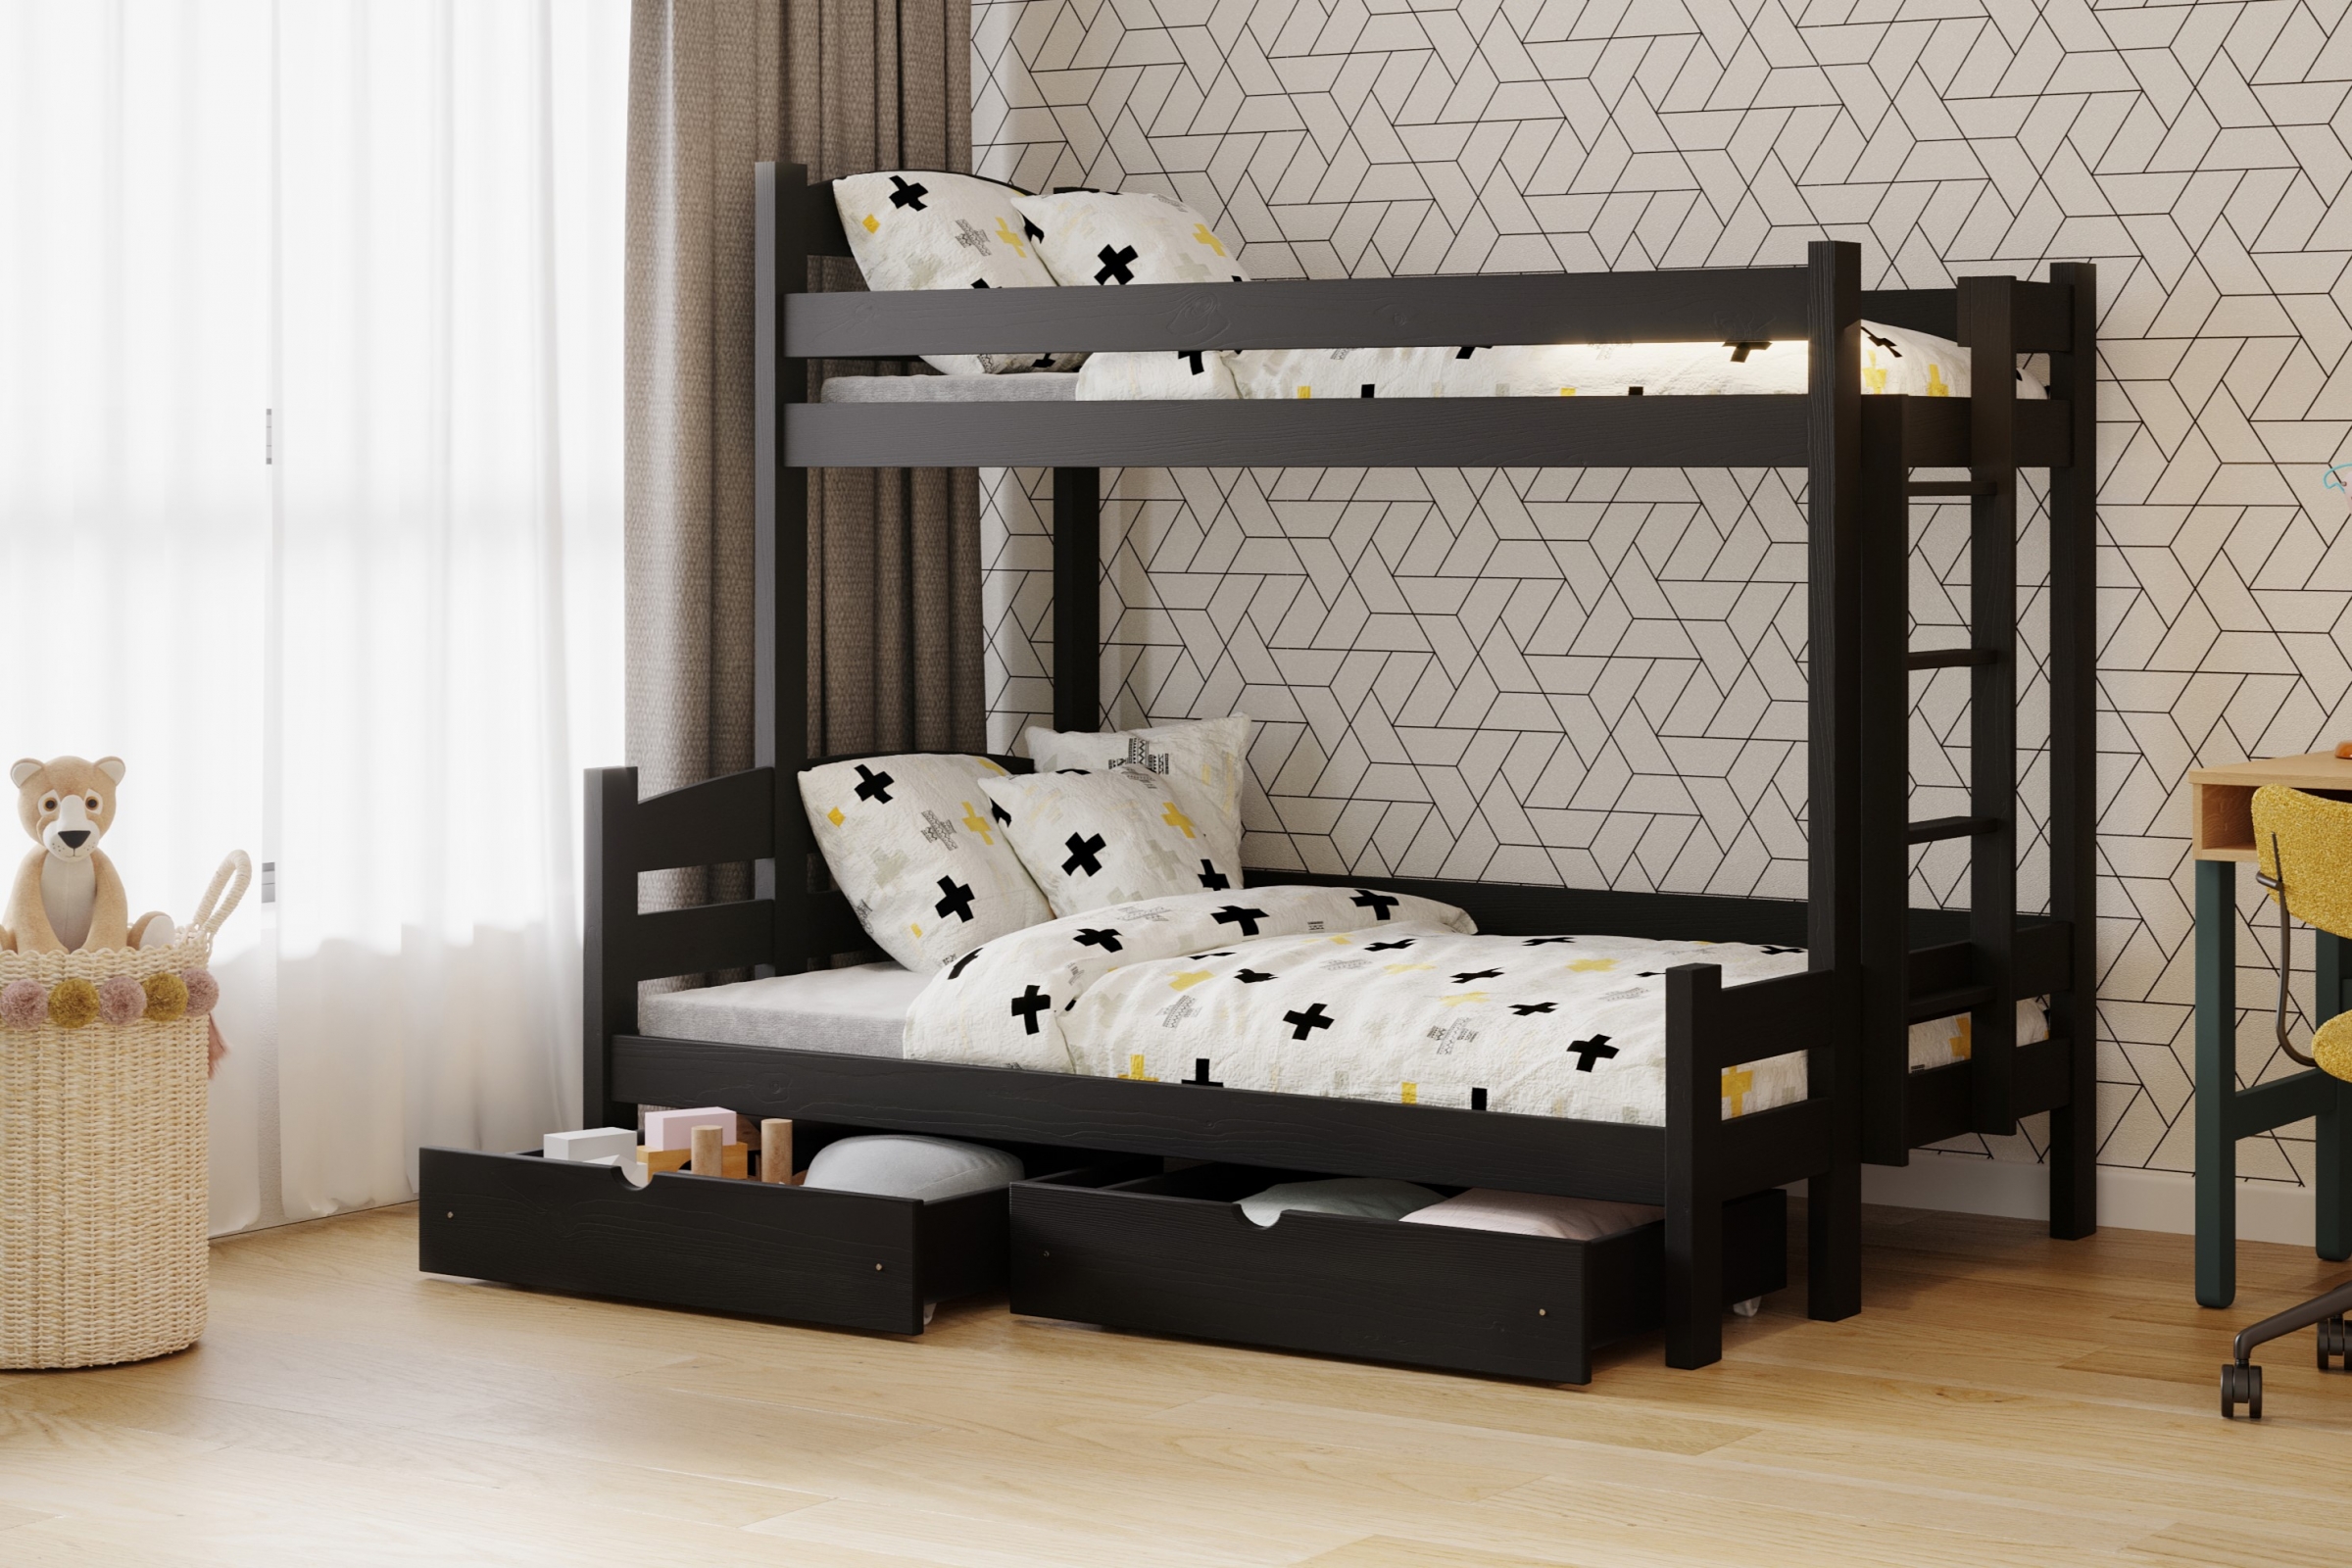 Lovic emeletes ágy, fiókokkal, jobb oldali - 80x200 cm/120x200 cm - fekete Emeletes ágy fiokokkal Lovic - fekete - aranzacja